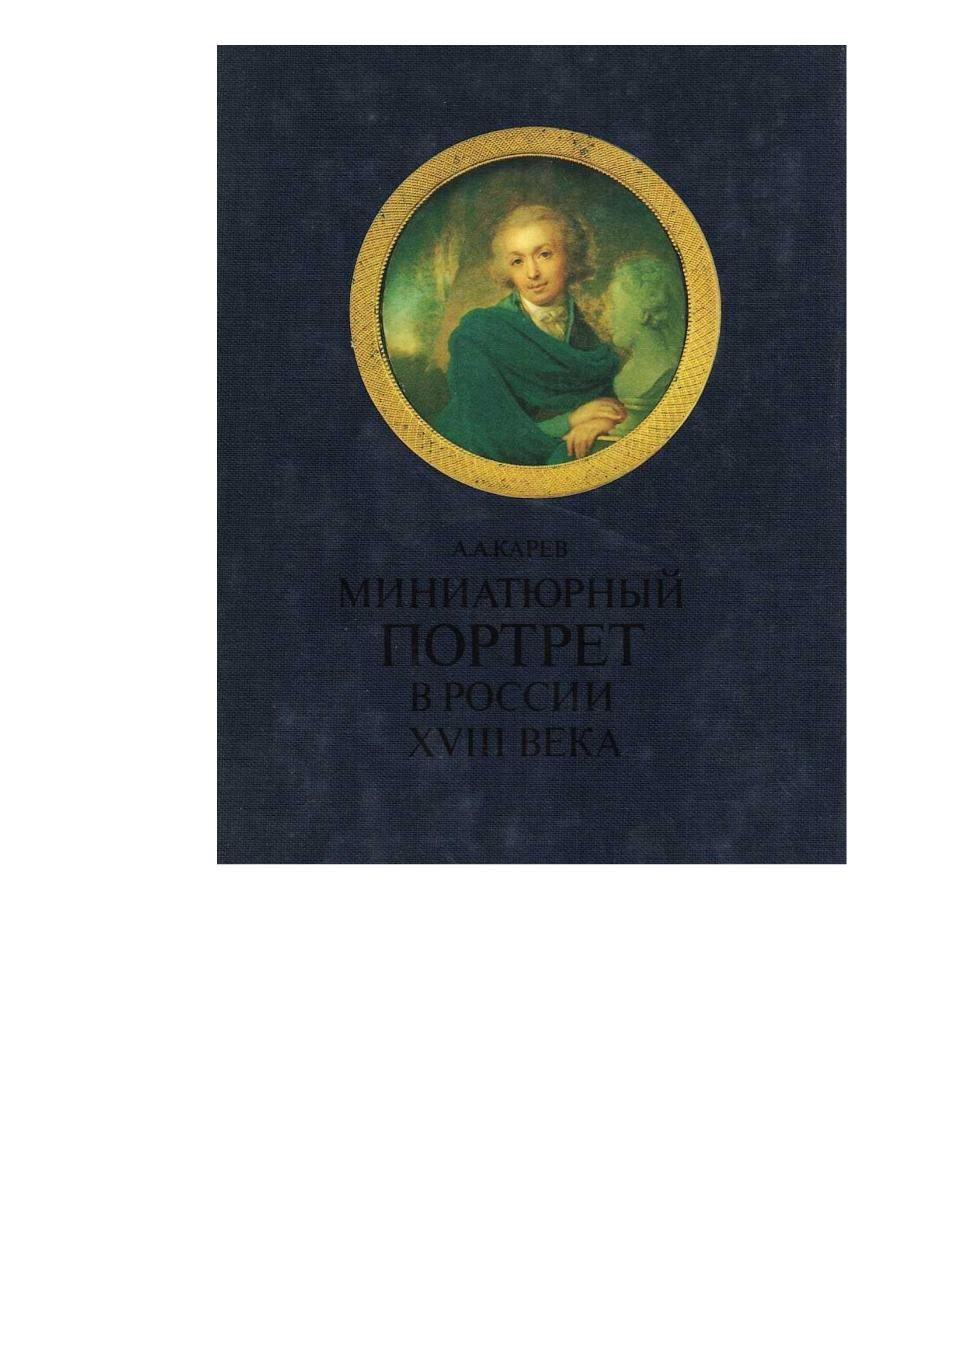 Карев А.А. Миниатюрный портрет в России XVIII века.